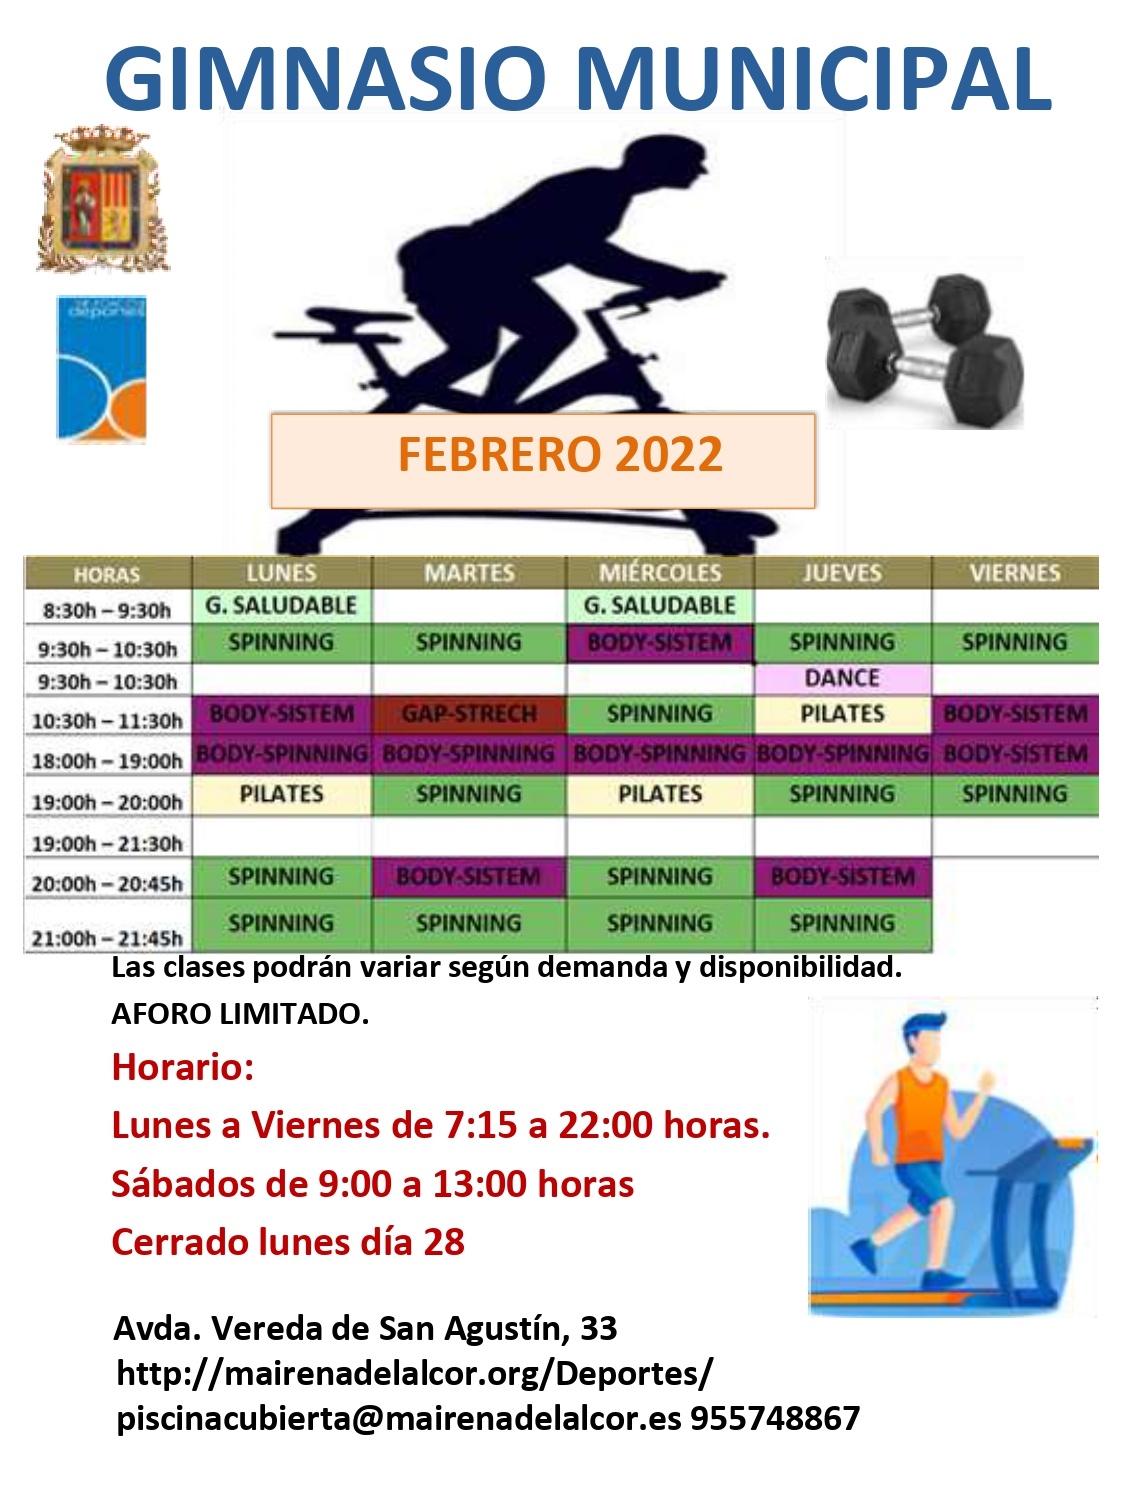 Gym FEBRERO 2022